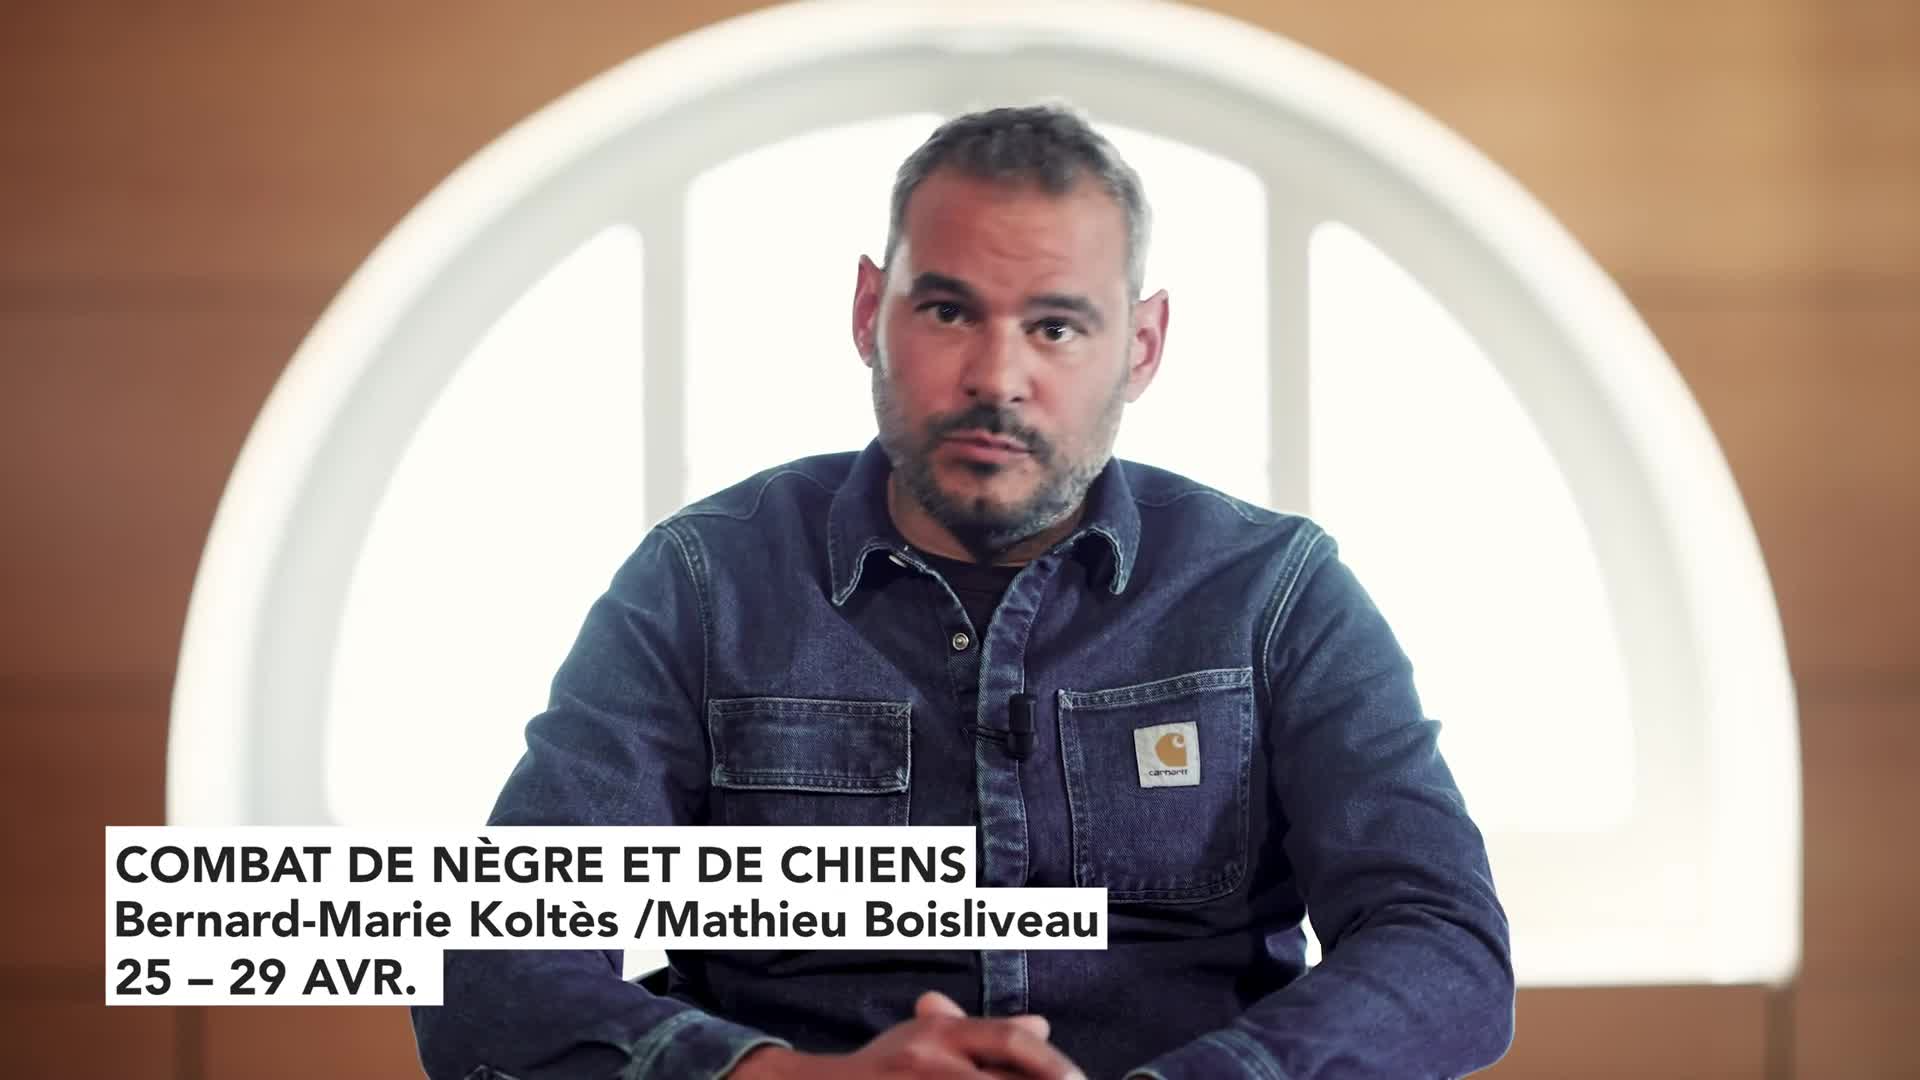 Vidéo "Combat de nègre et de chiens" - Bernard-Marie Koltès/Mathieu Boisliveau - Présentation